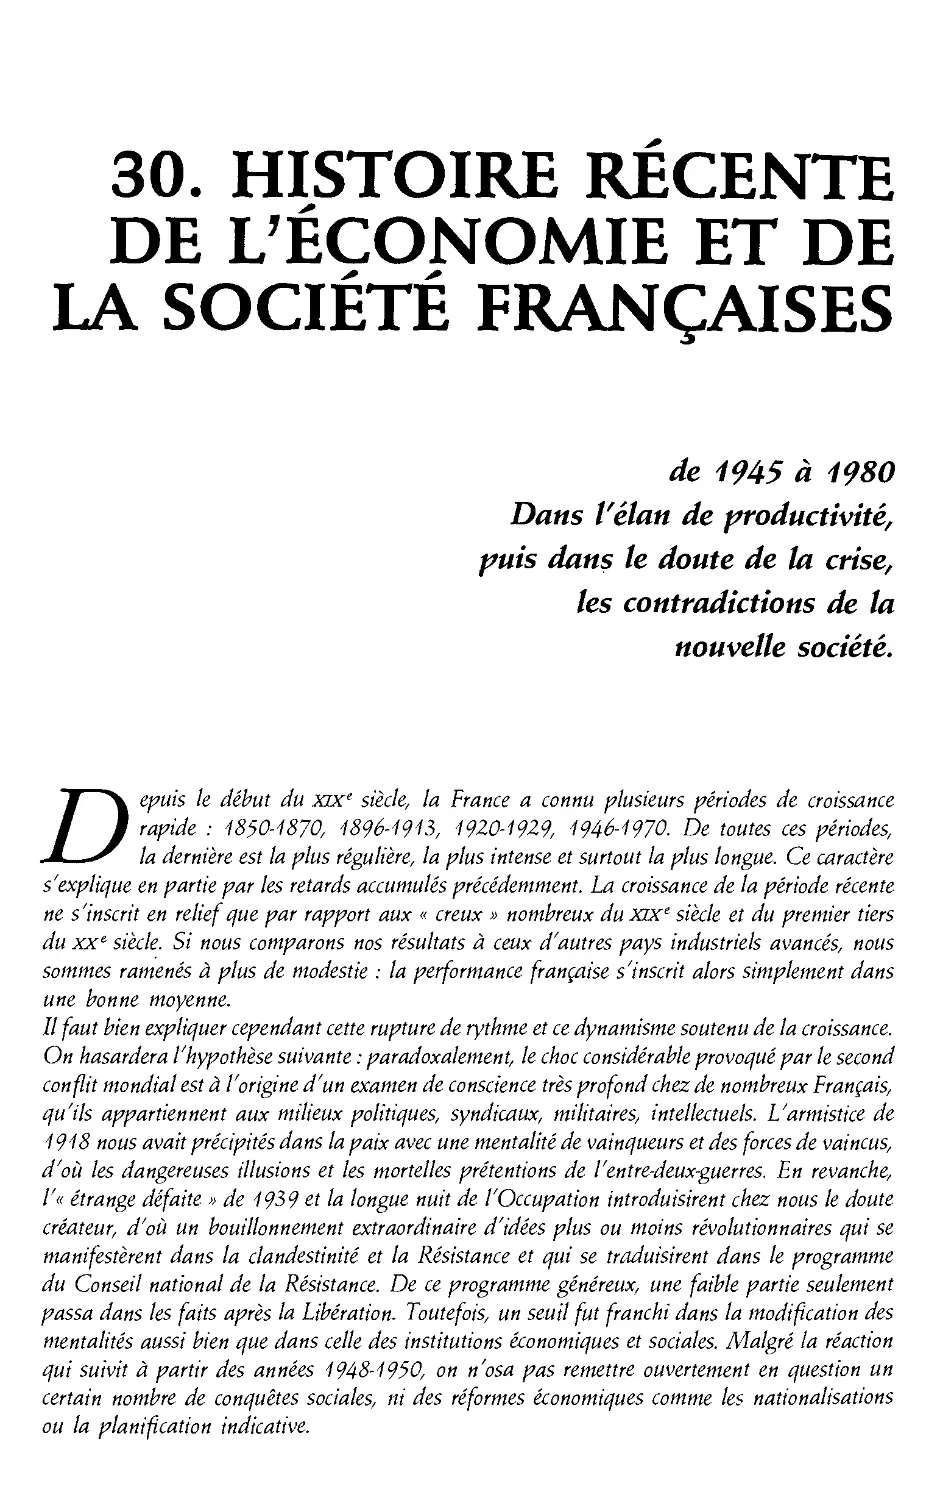 30. Histoire recente de l'economie et de la societe francaises de 1945 a 1980 [871]